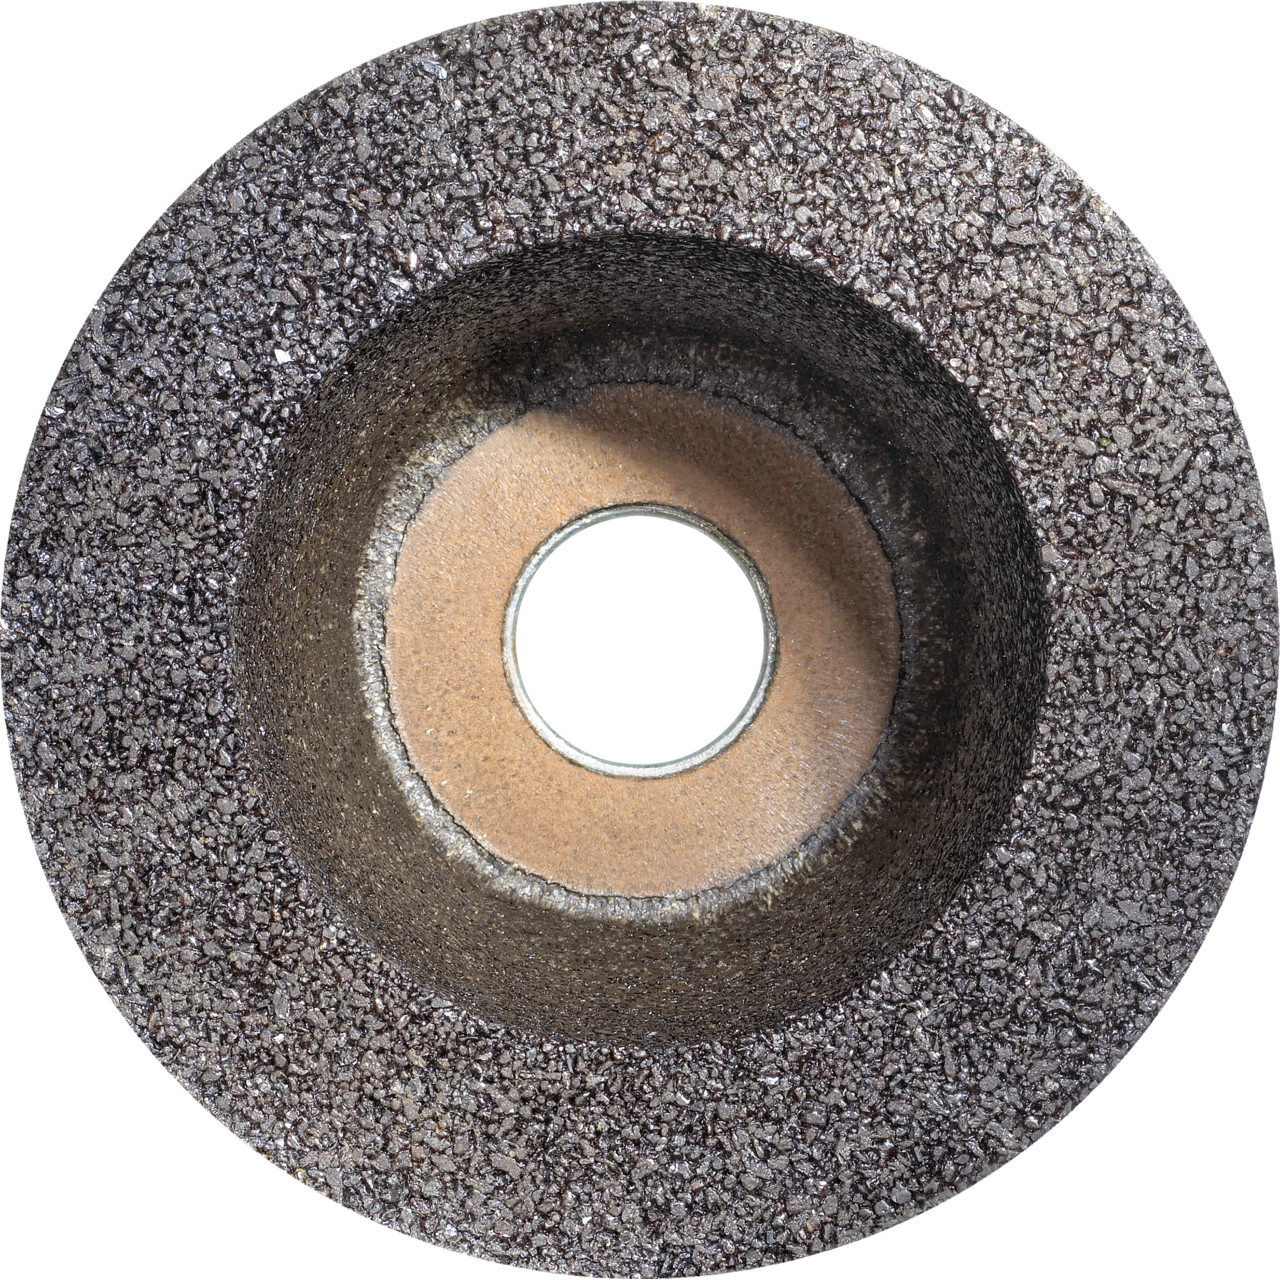 TYROLIT Pot en résine synthétique D/JxPxH 110/90x55x22,23 Pour la pierre, forme : 11BT Pot à meuler, art. 342583